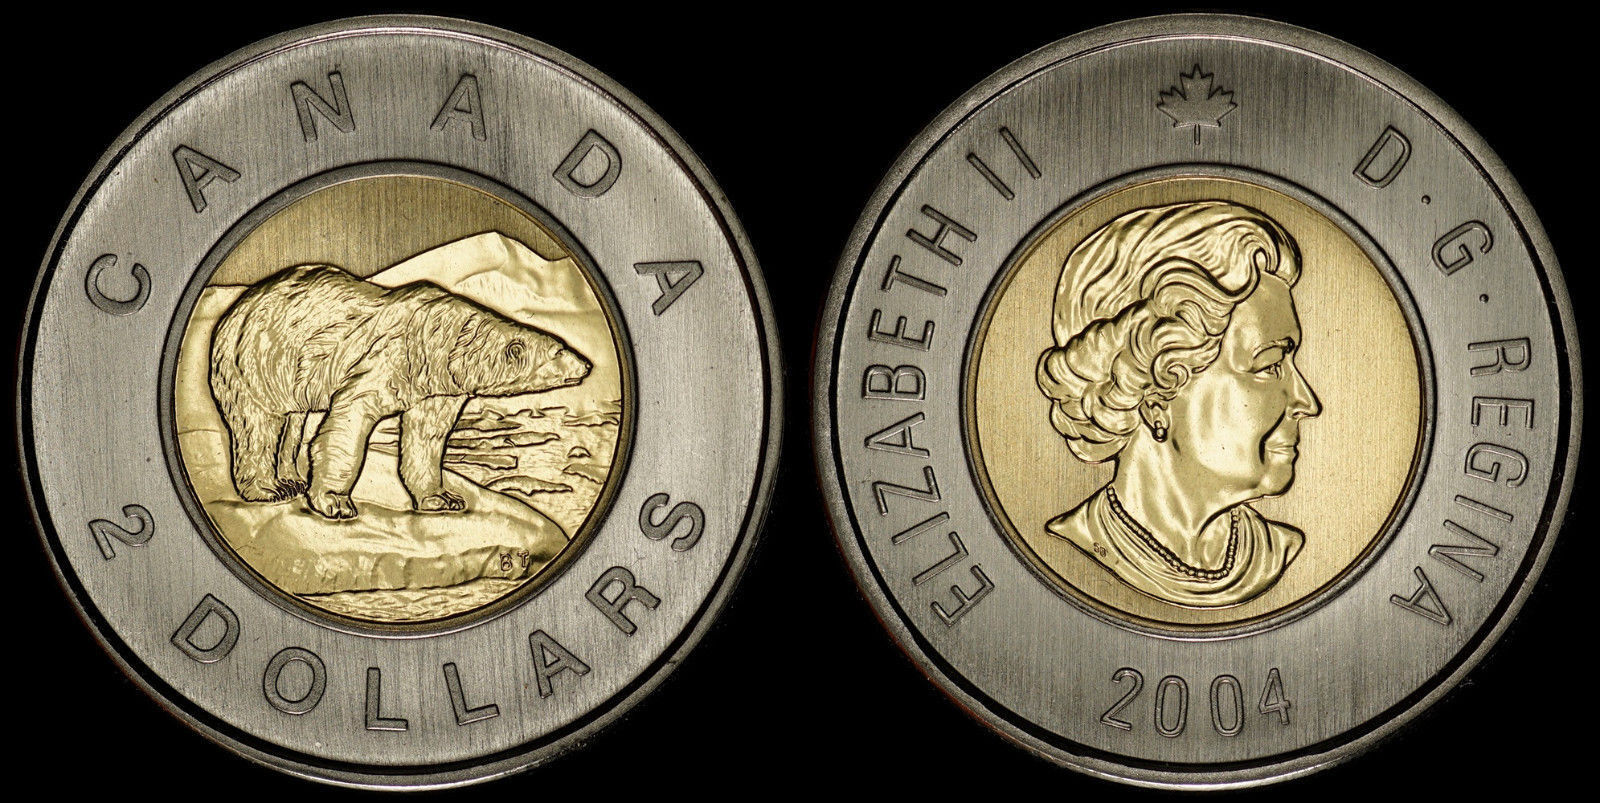 CANADA $2 2004-P (SPECIMEN) *BEAUTIFUL & LOW MINTAGE SPECIMEN ISSUE*